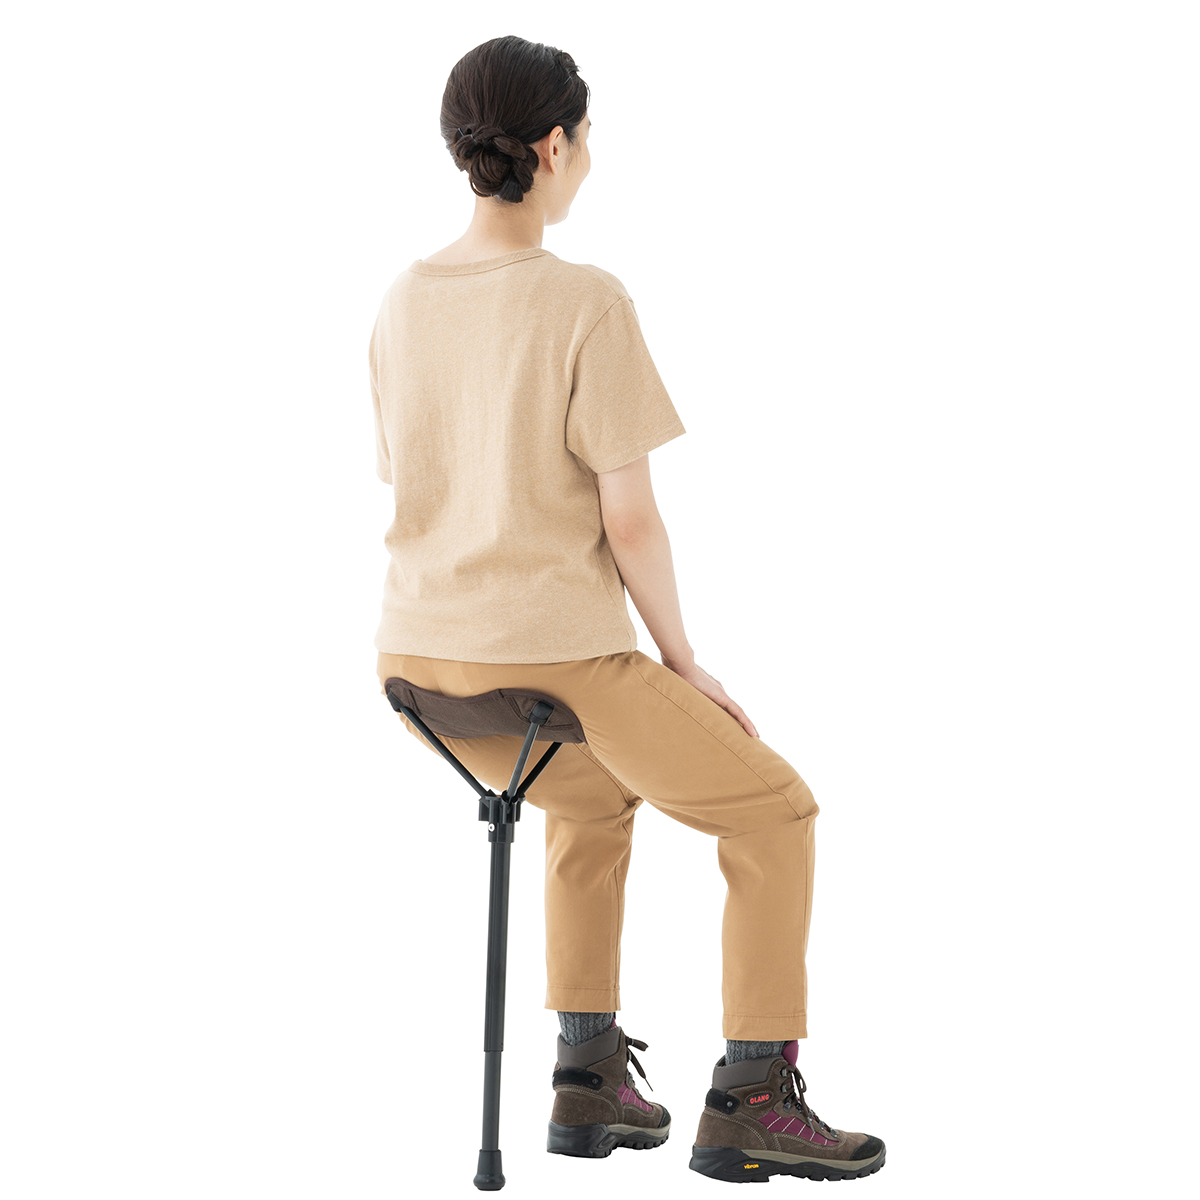 LOGOS エアライト 1ポールチェア・ハイポジション|ギア|家具|椅子 